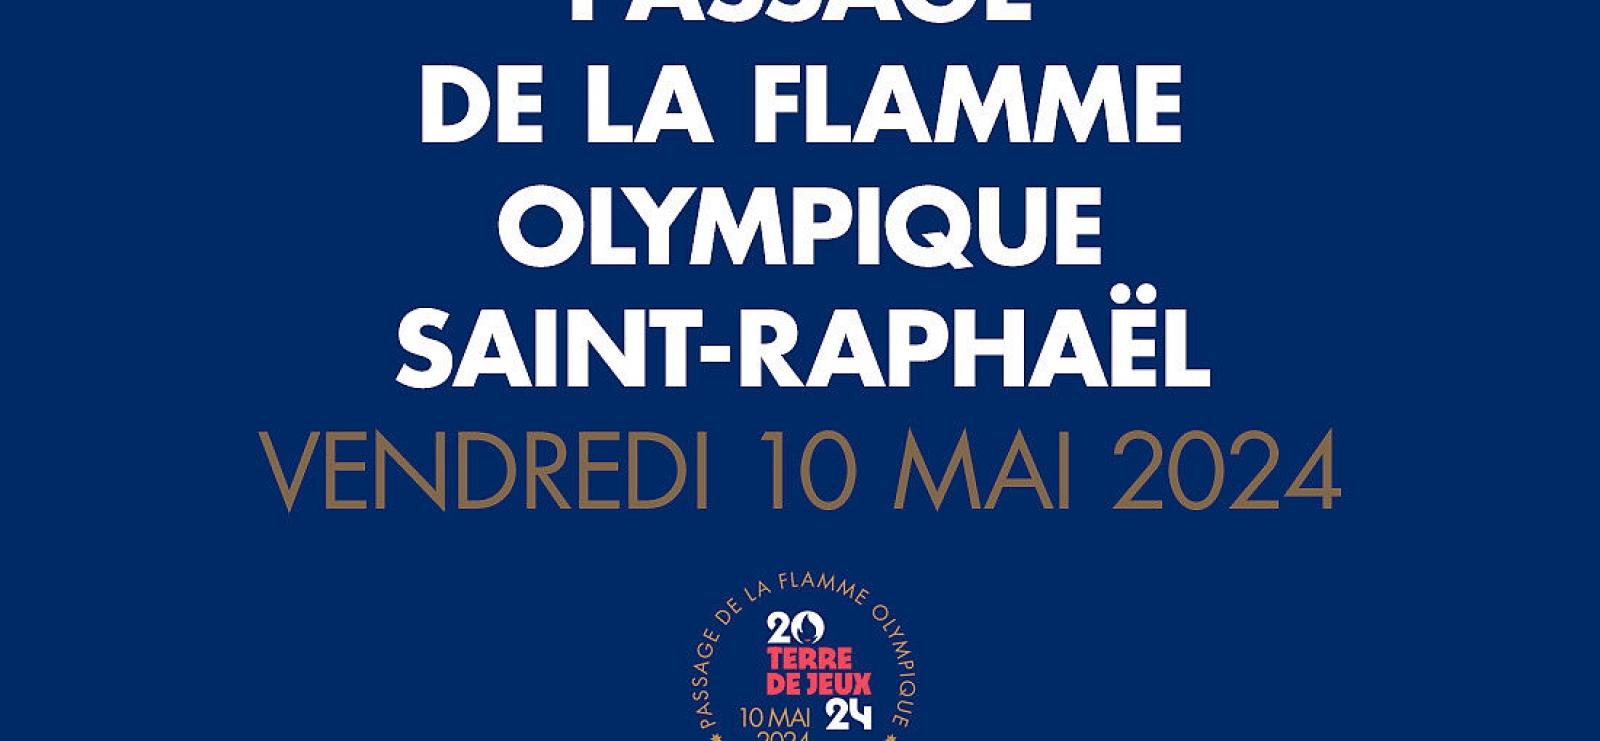 Passage de la Flamme Olympique à Saint-Raphaël